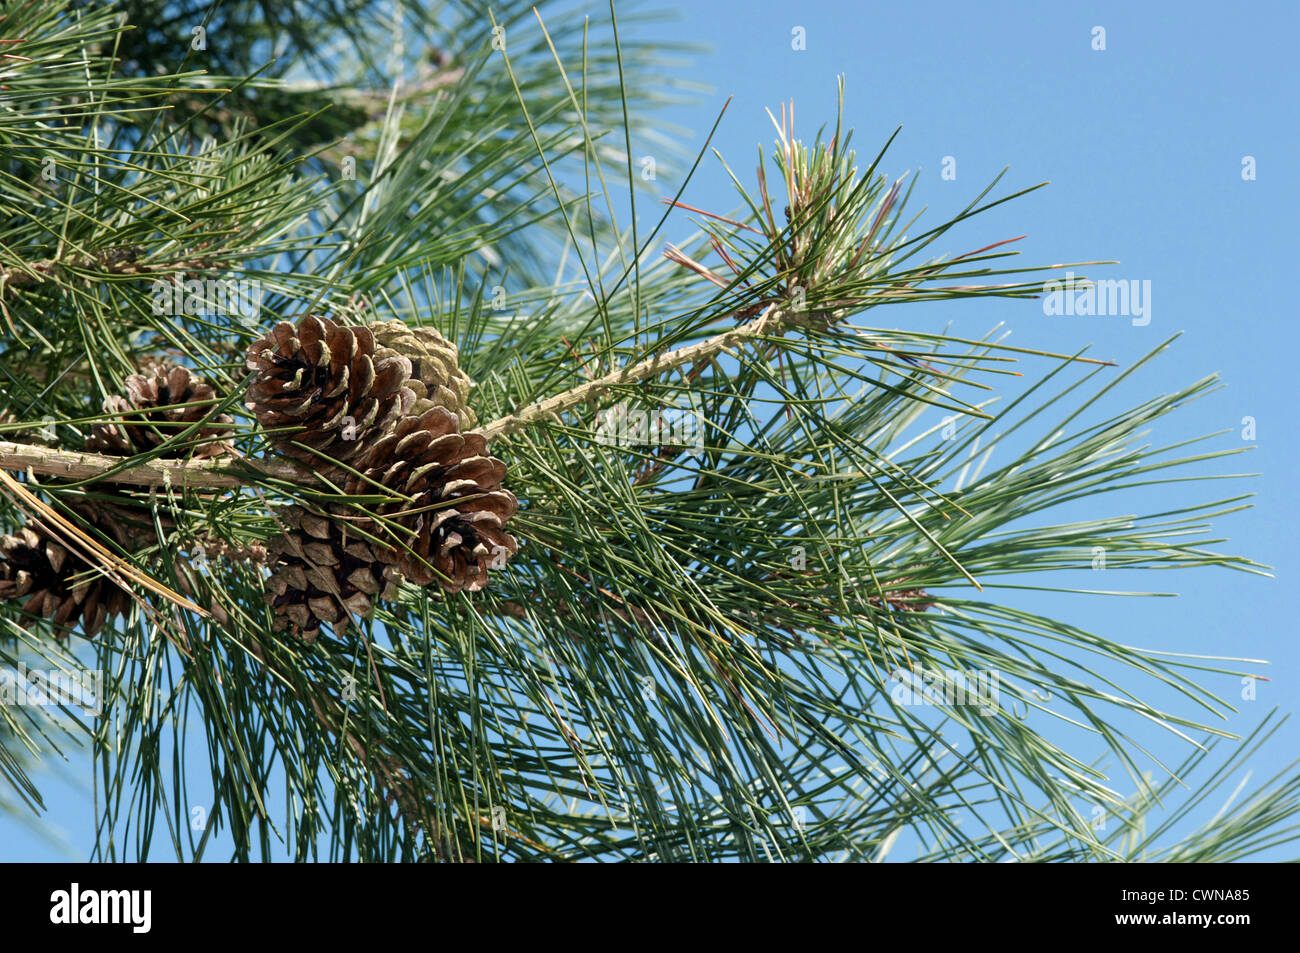 Japanese Red Pine Pinus densiflora (Pinaceae) Stock Photo